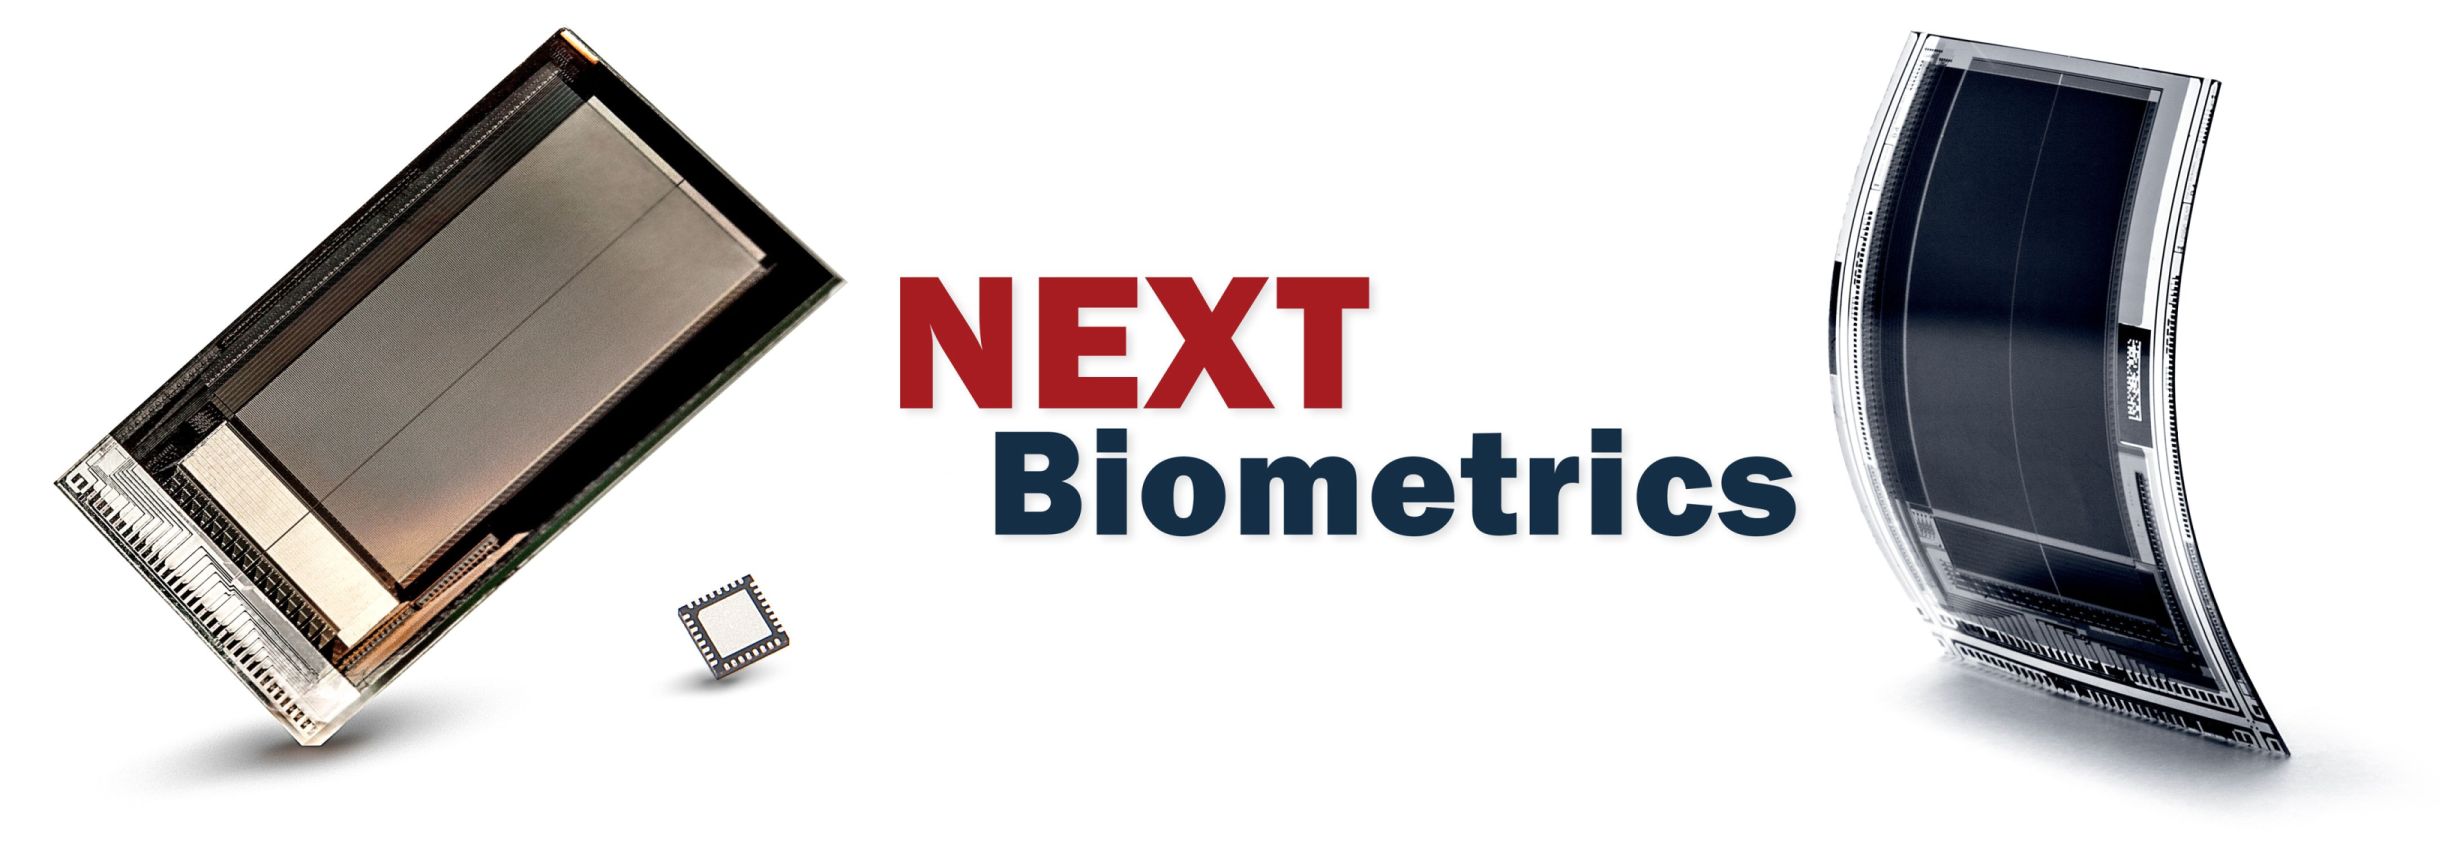 NEXT Biometrics and 